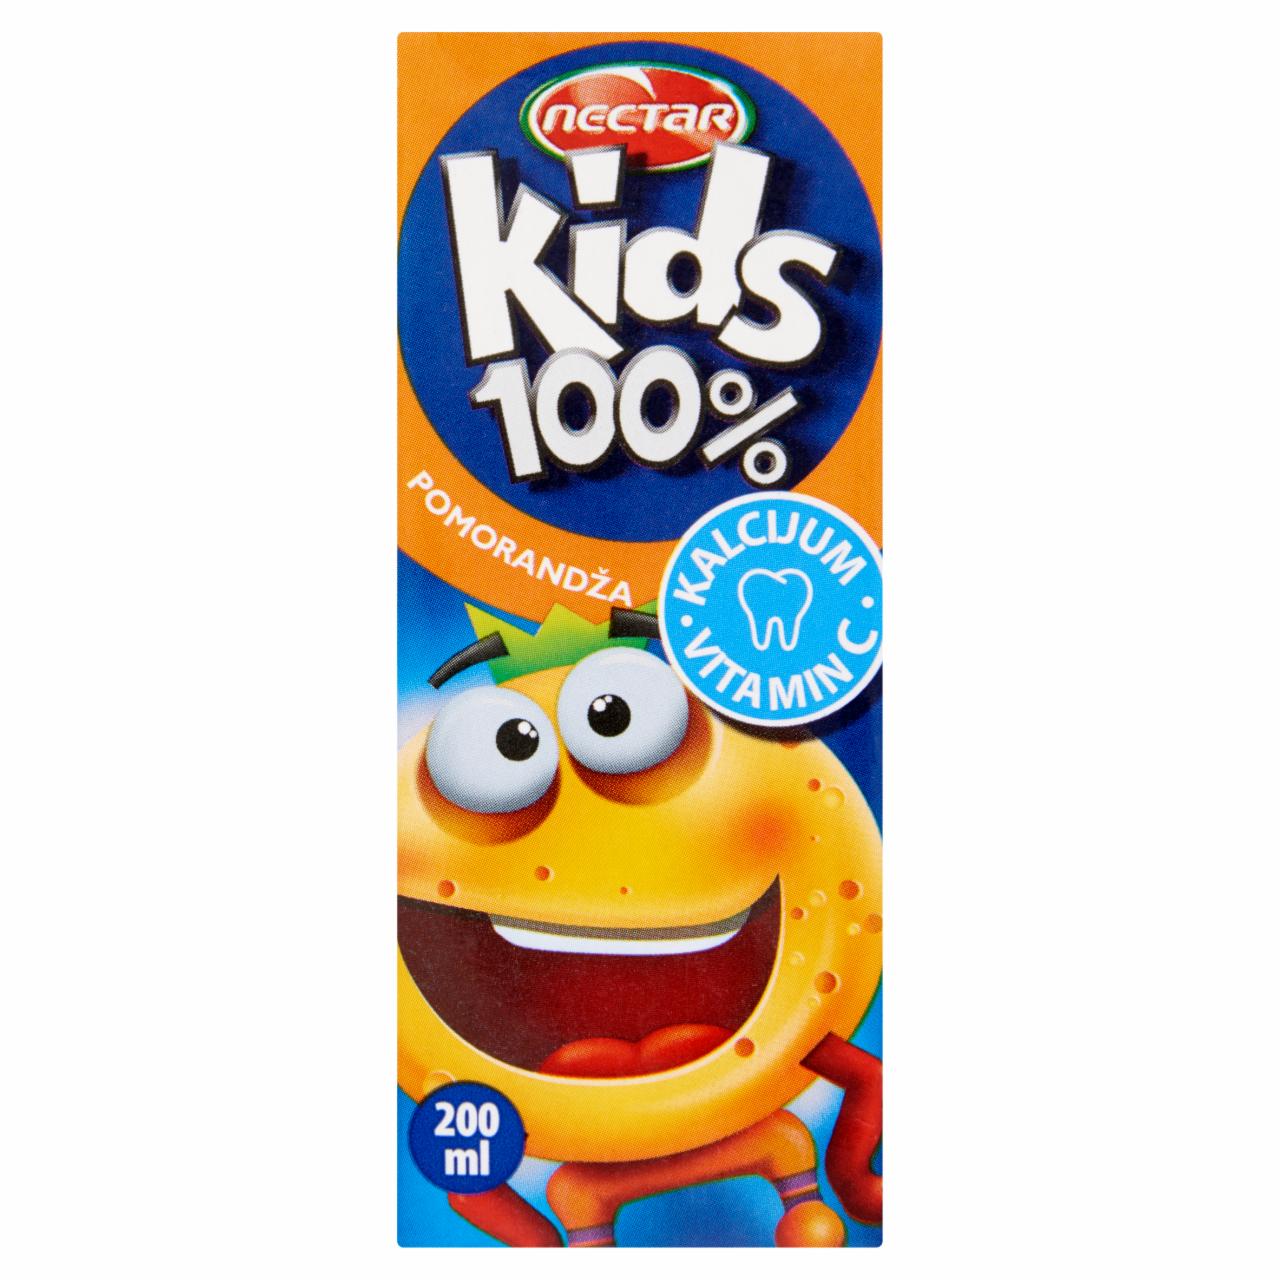 Képek - Nectar Kids 100% rostos narancslé hozzáadott kalciummal és C-vitaminnal 200 ml